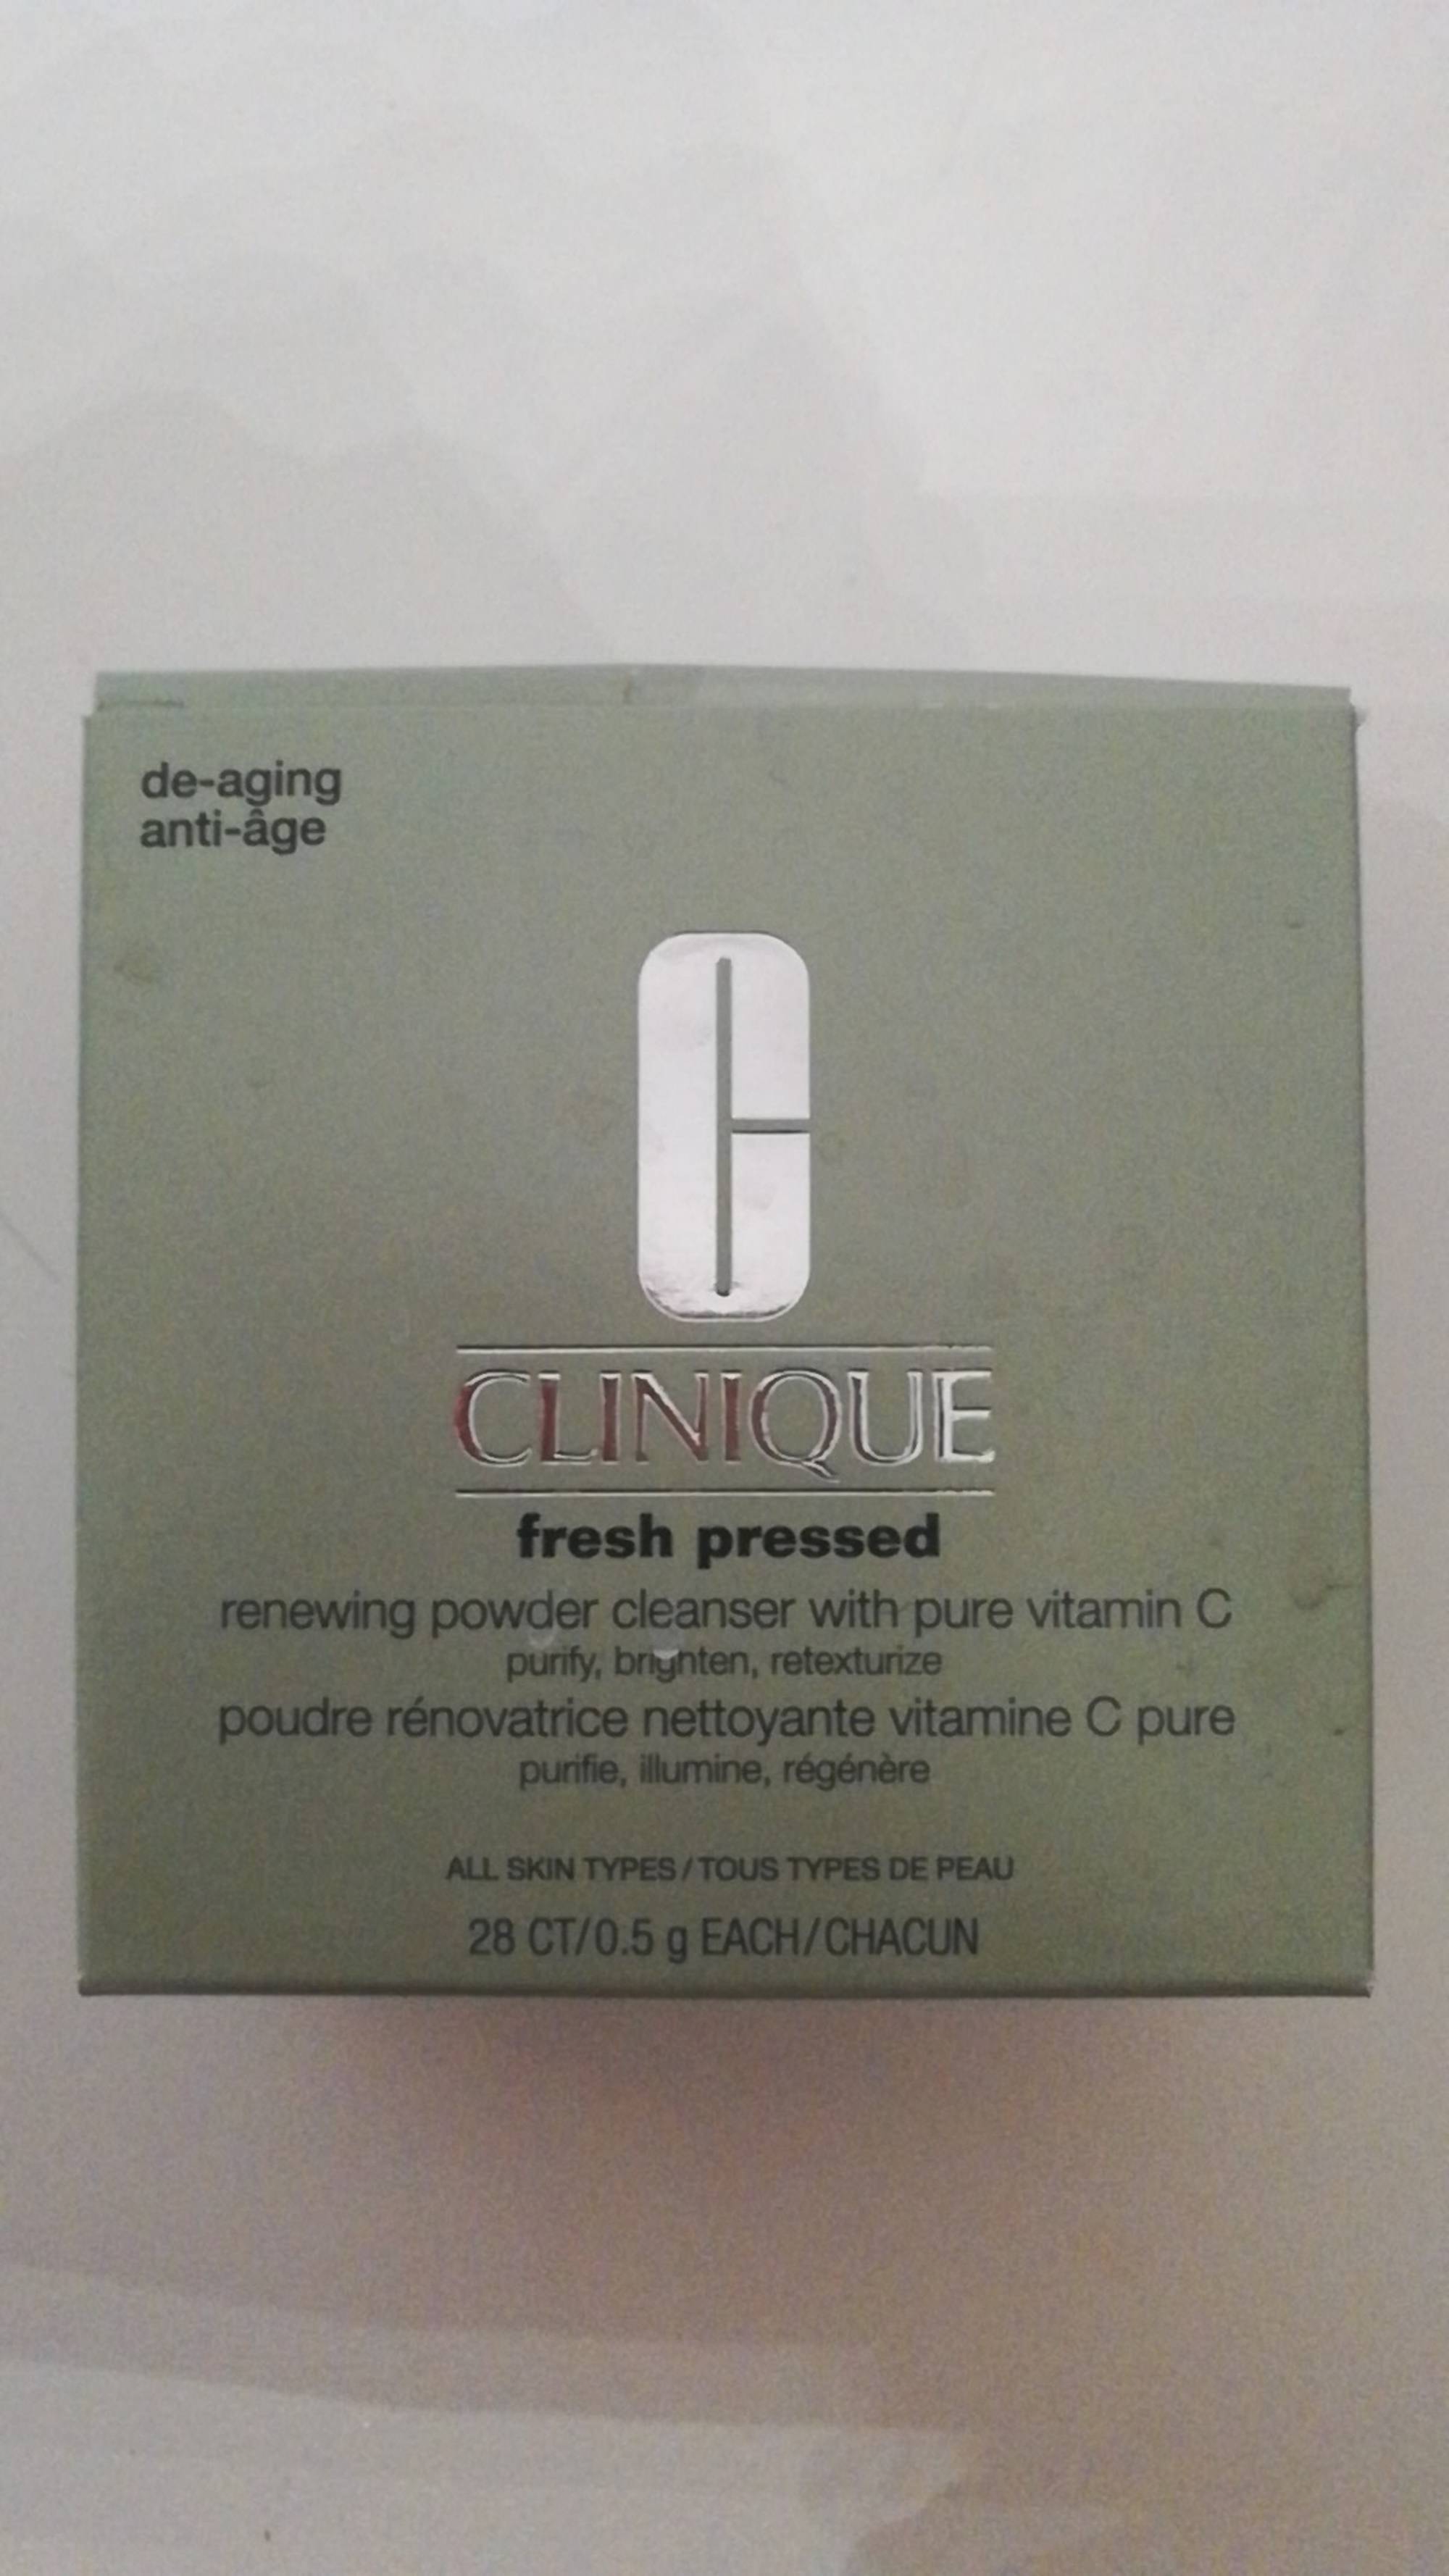 CLINIQUE - Fresh pressed - Poudre rénovatrice nettoyante vitamine C pure